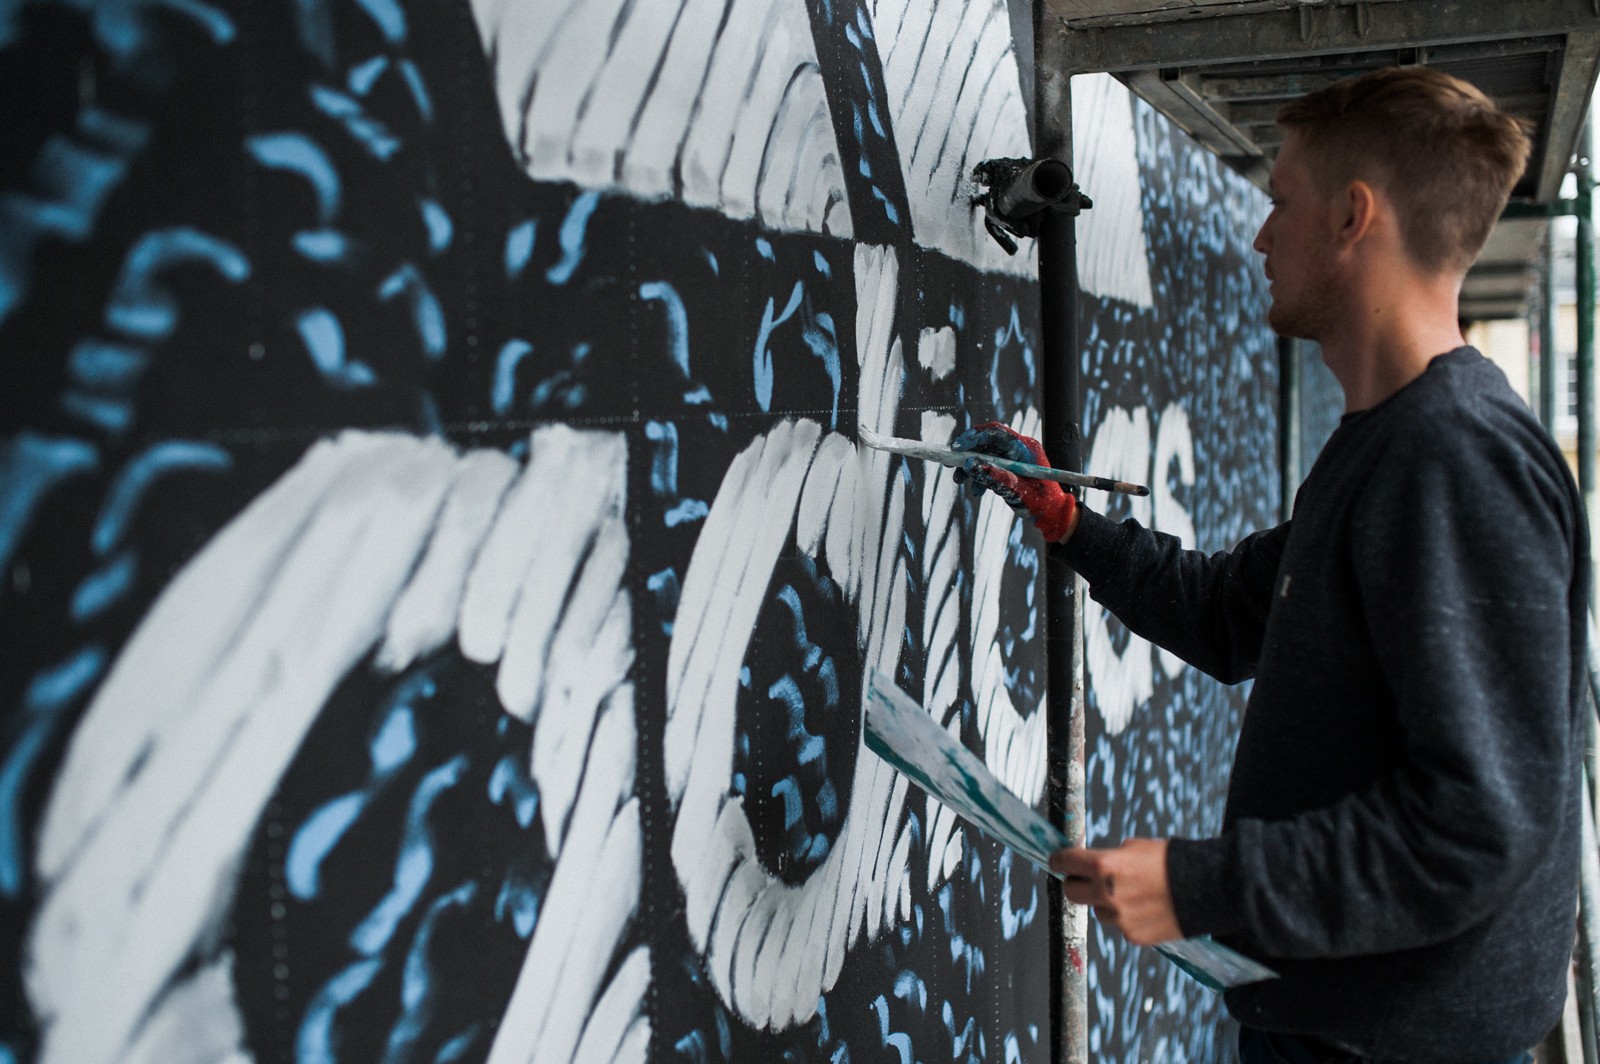 Adidas Werbung in Warschau in Form eines Murals | Adidas Parley | Portfolio